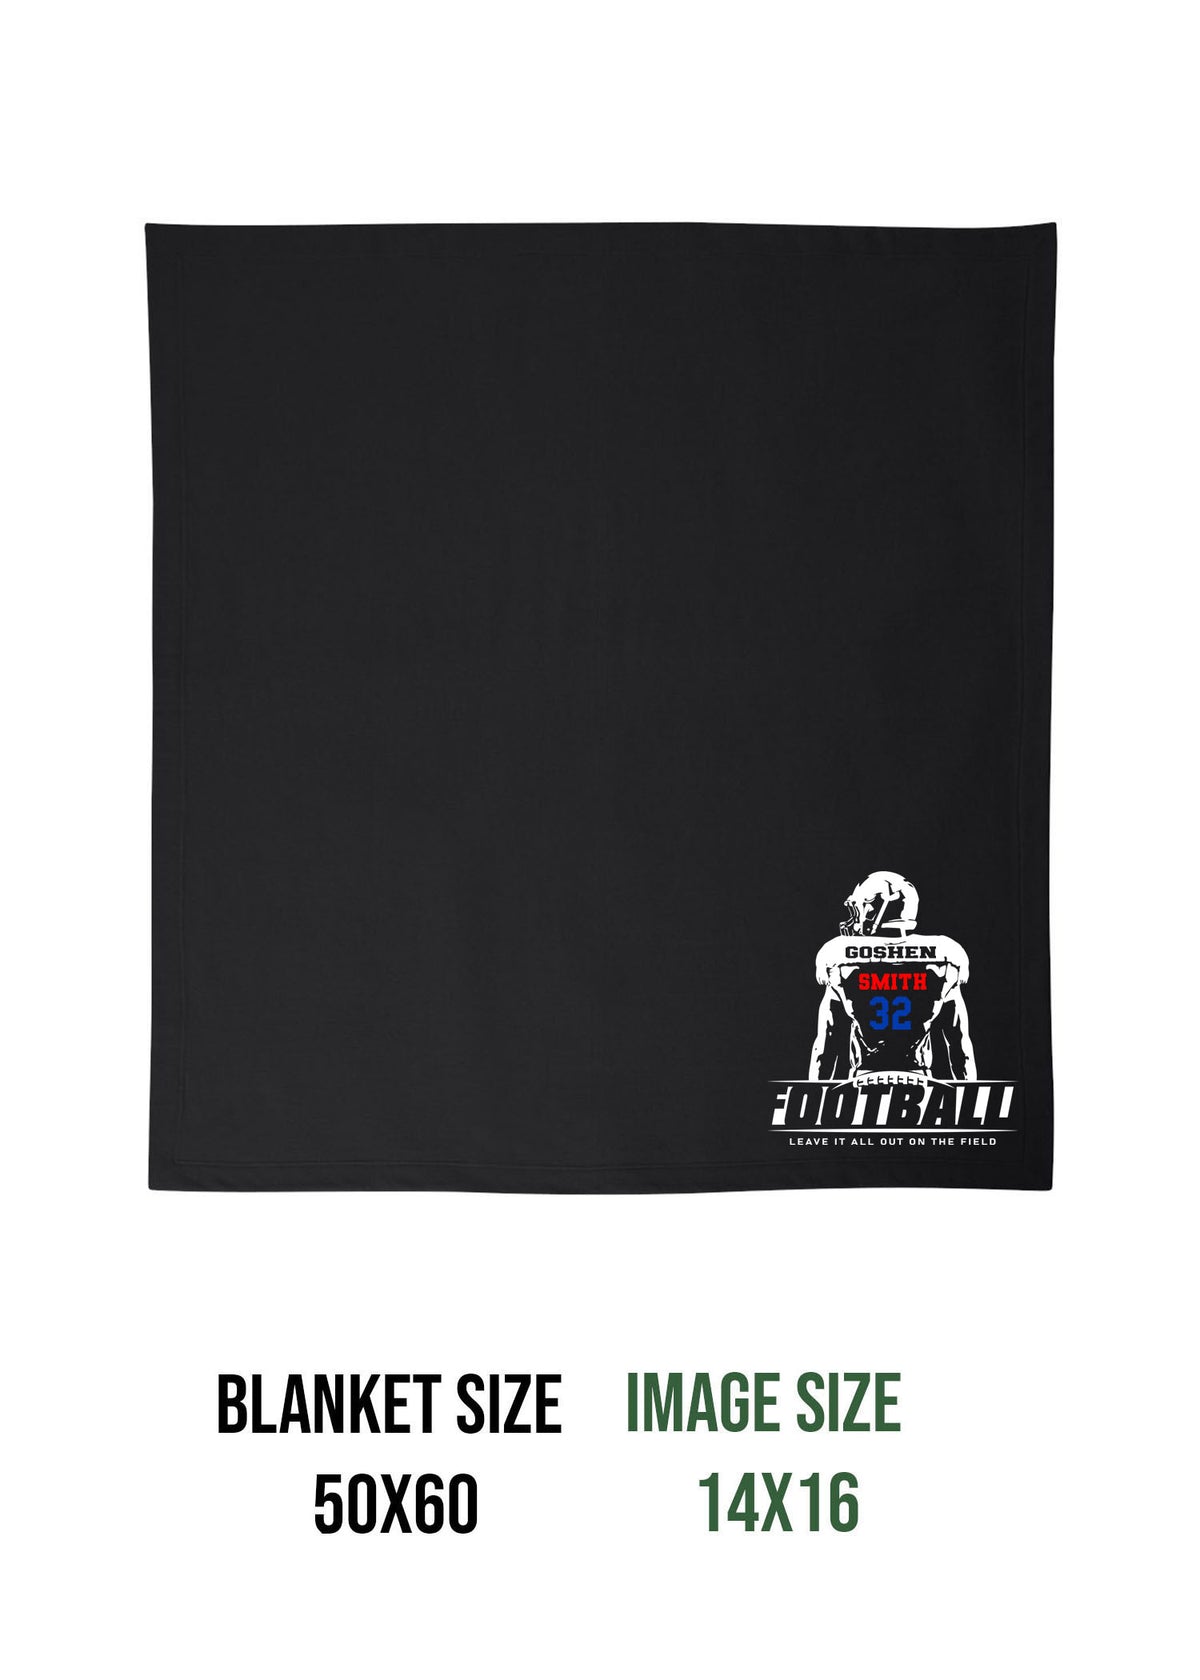 Goshen Football Design 5 Blanket